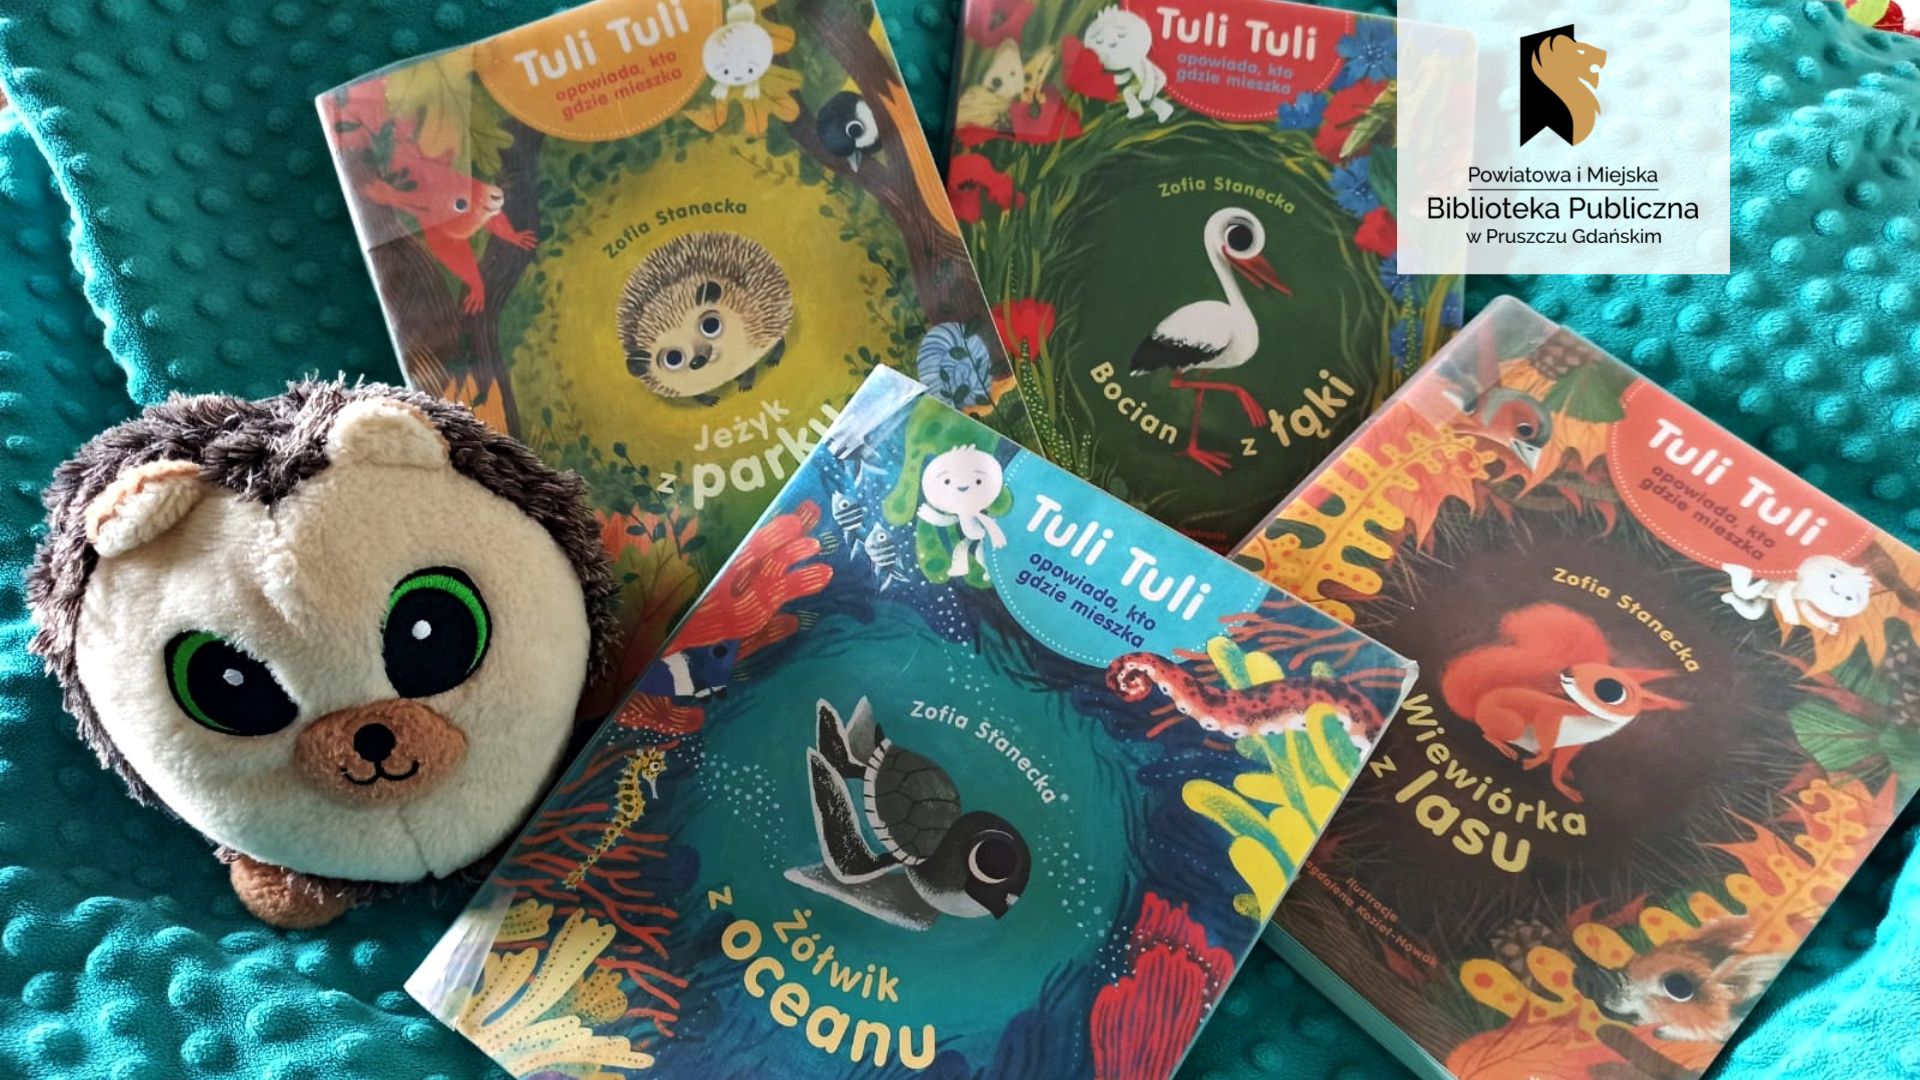 Cztery książki z serii Tuli Tuli opowiada, kto gdzie mieszka leżą na niebieskim kocu. Na okładkach ilustracje zwierząt: jeża, bociana, wiewiórki, żółwia. Obok książek - pluszowy jeż.